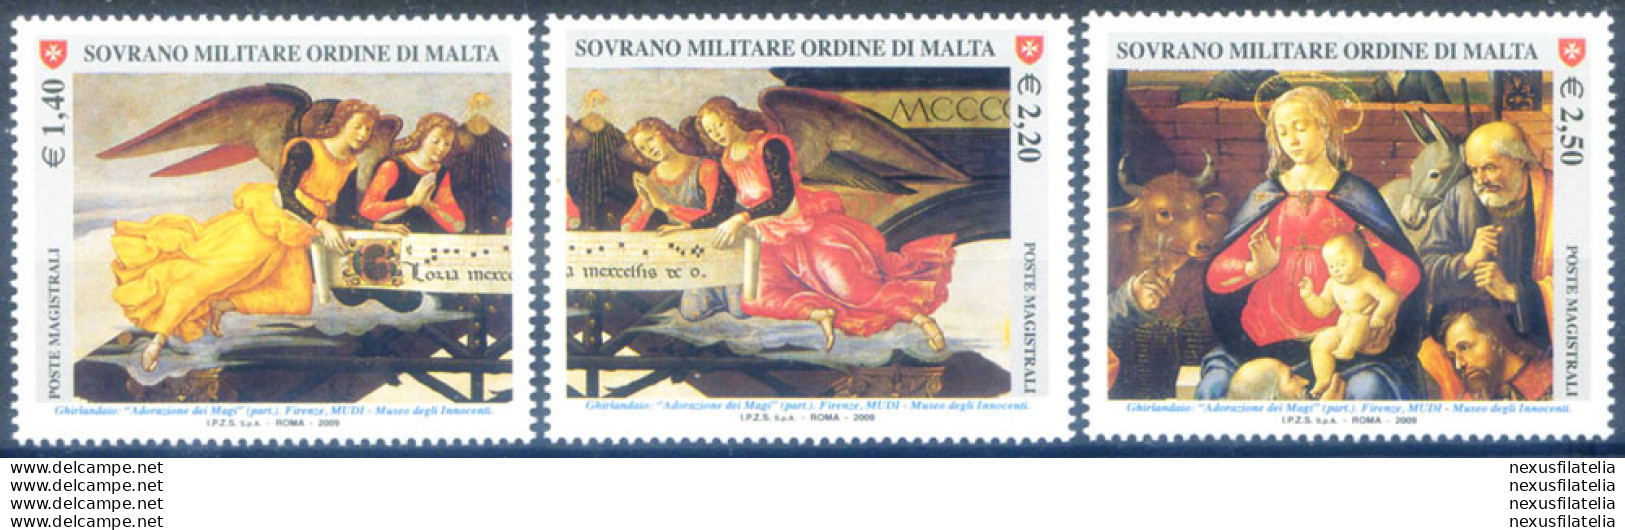 Natale 2009. - Sovrano Militare Ordine Di Malta